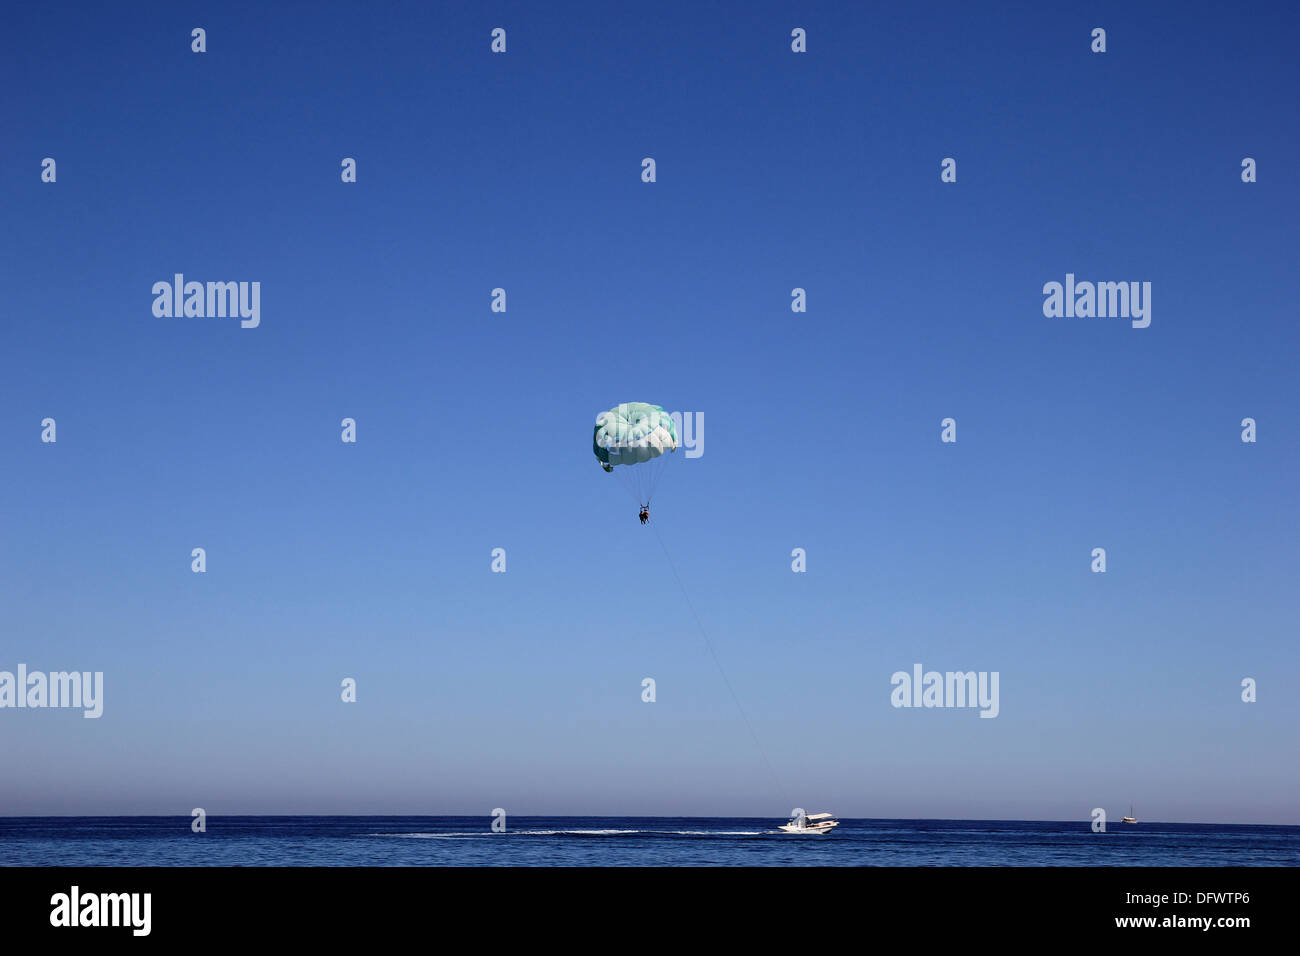 Bateau flottant sur la mer avec un parachute Banque D'Images